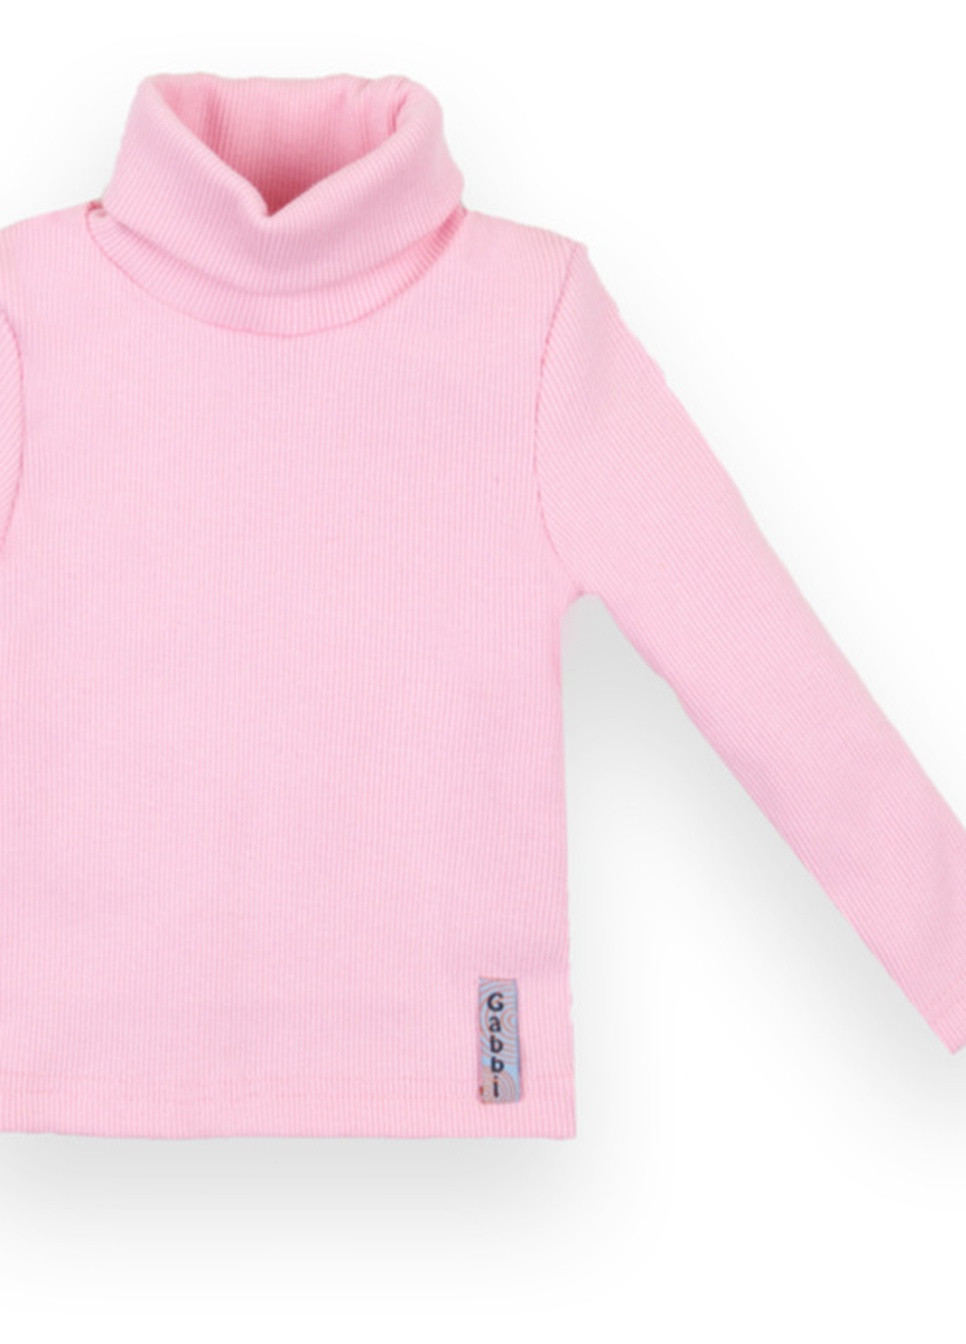 Розовый демисезонный детский свитер sv-21-10-1 *стиль* Габби